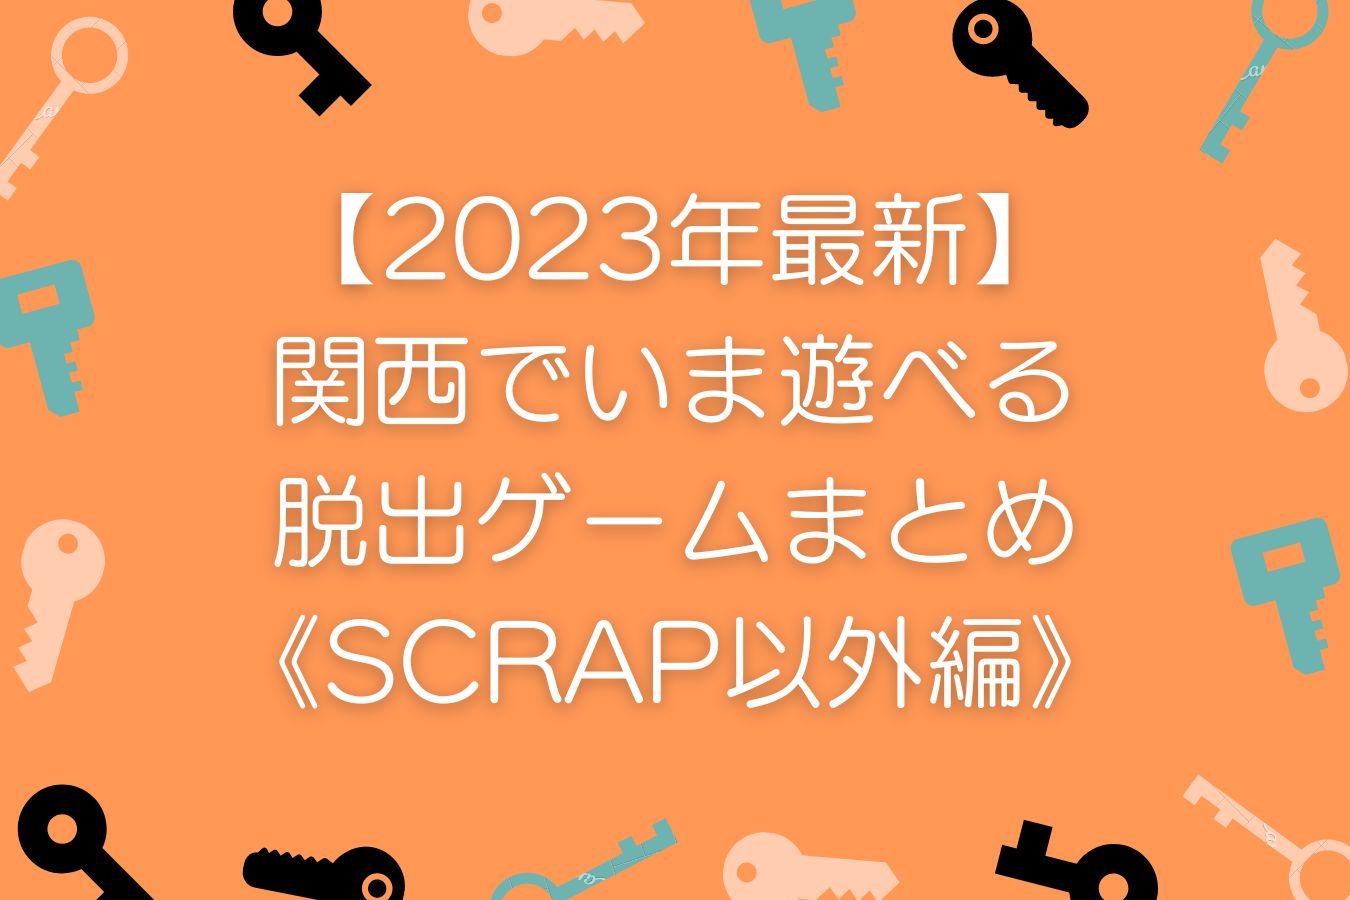 【2023年最新】関西でいま遊べる脱出ゲームまとめ《SCRAP以外編》